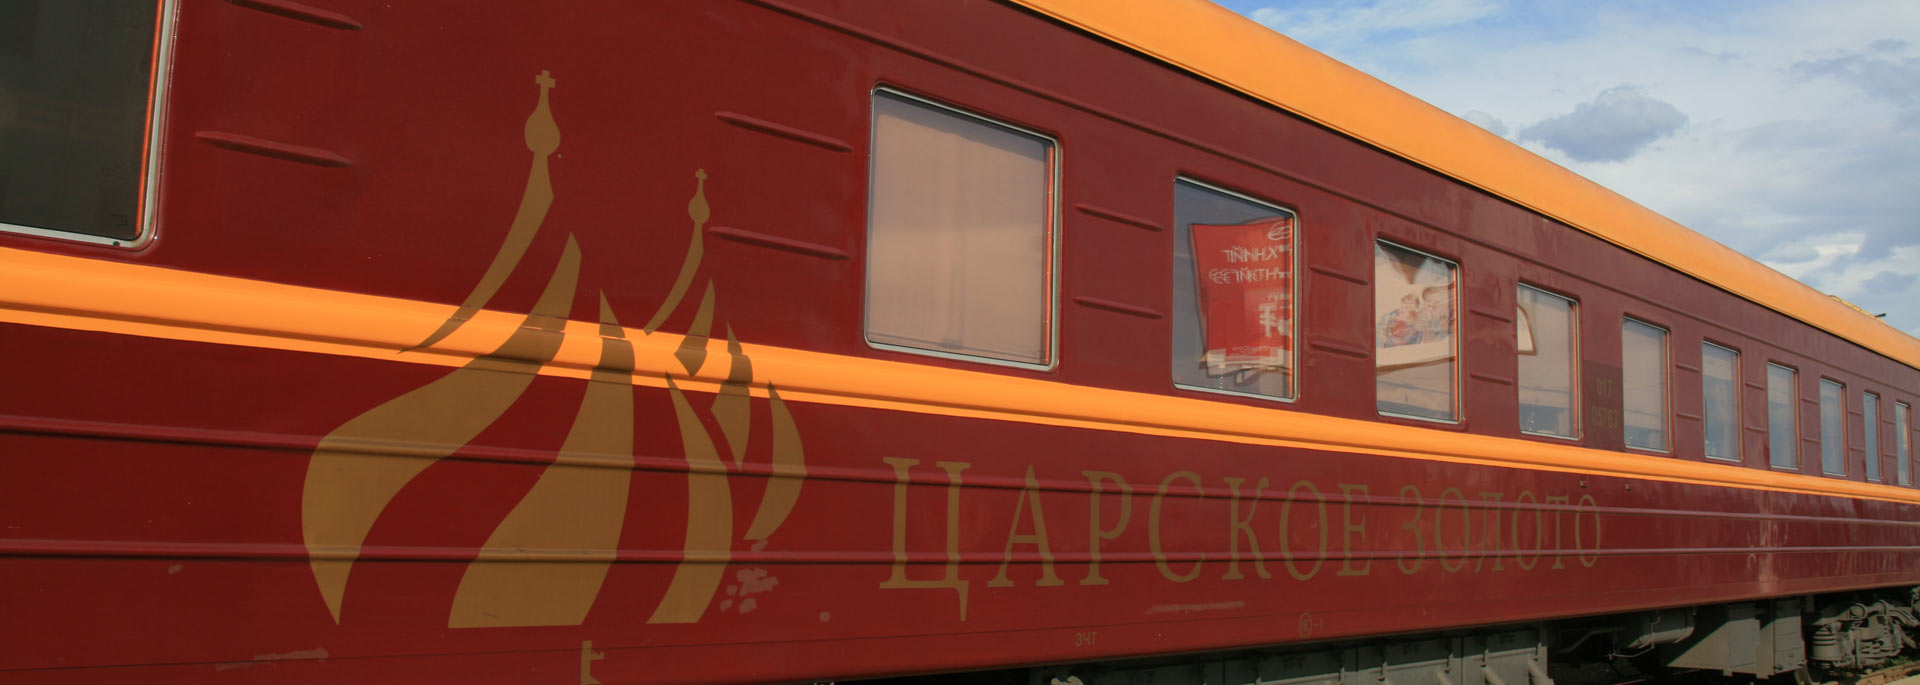 Wie ich mich auf eine Reise auf der Transsibirischen Eisenbahn vorbereite